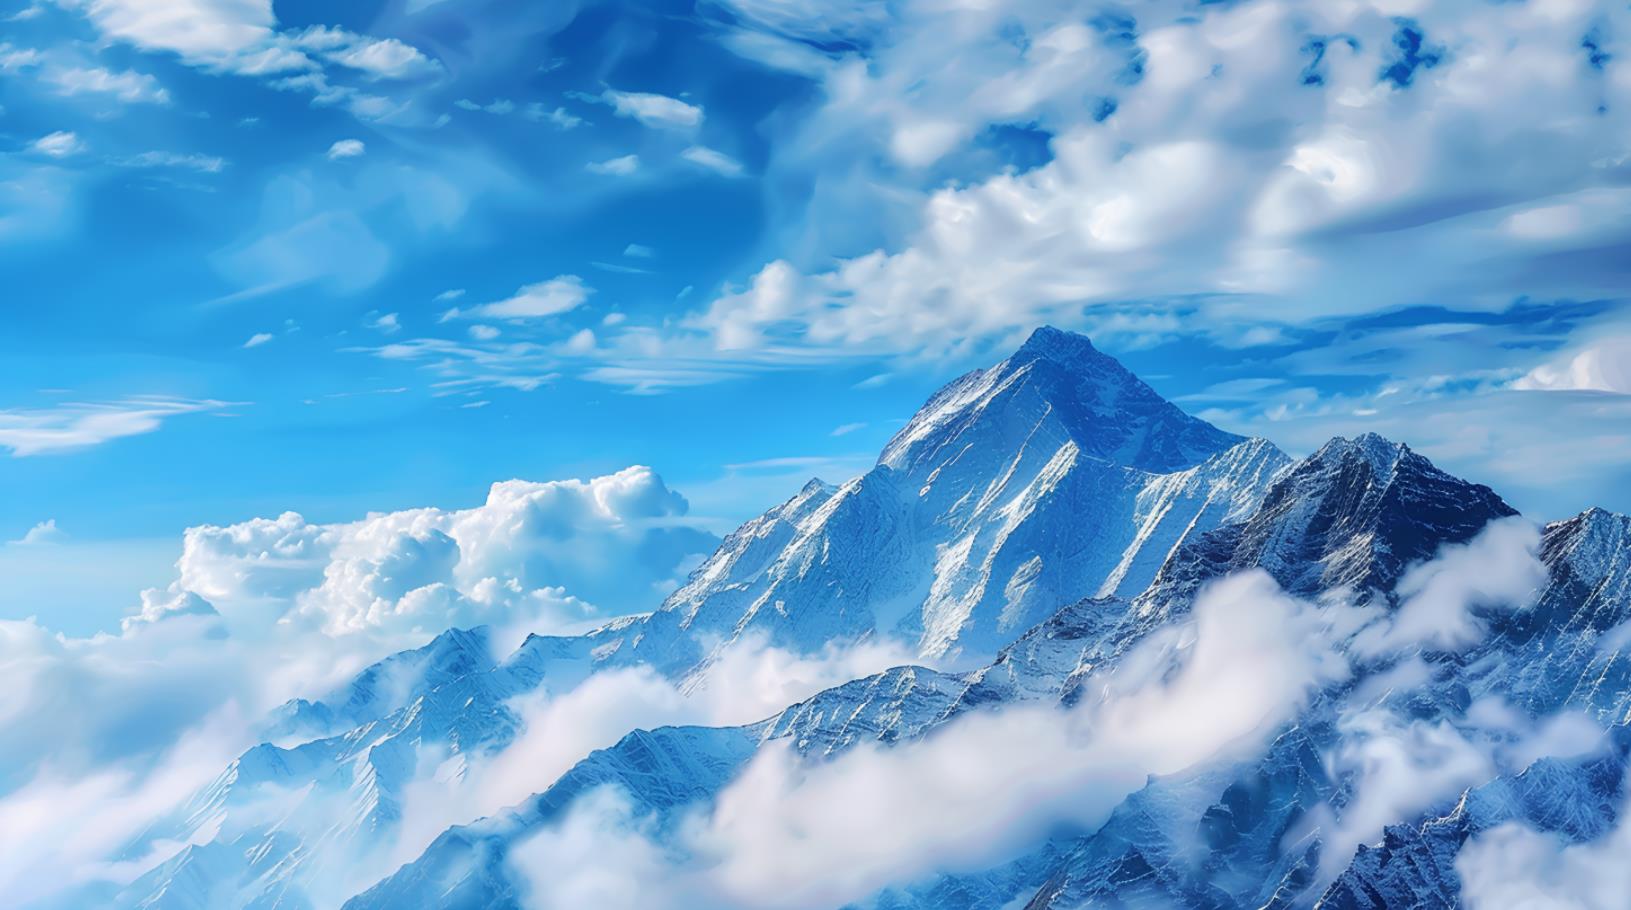 山水画风格的高清摄影壁纸以蓝天白云和雪山为背景